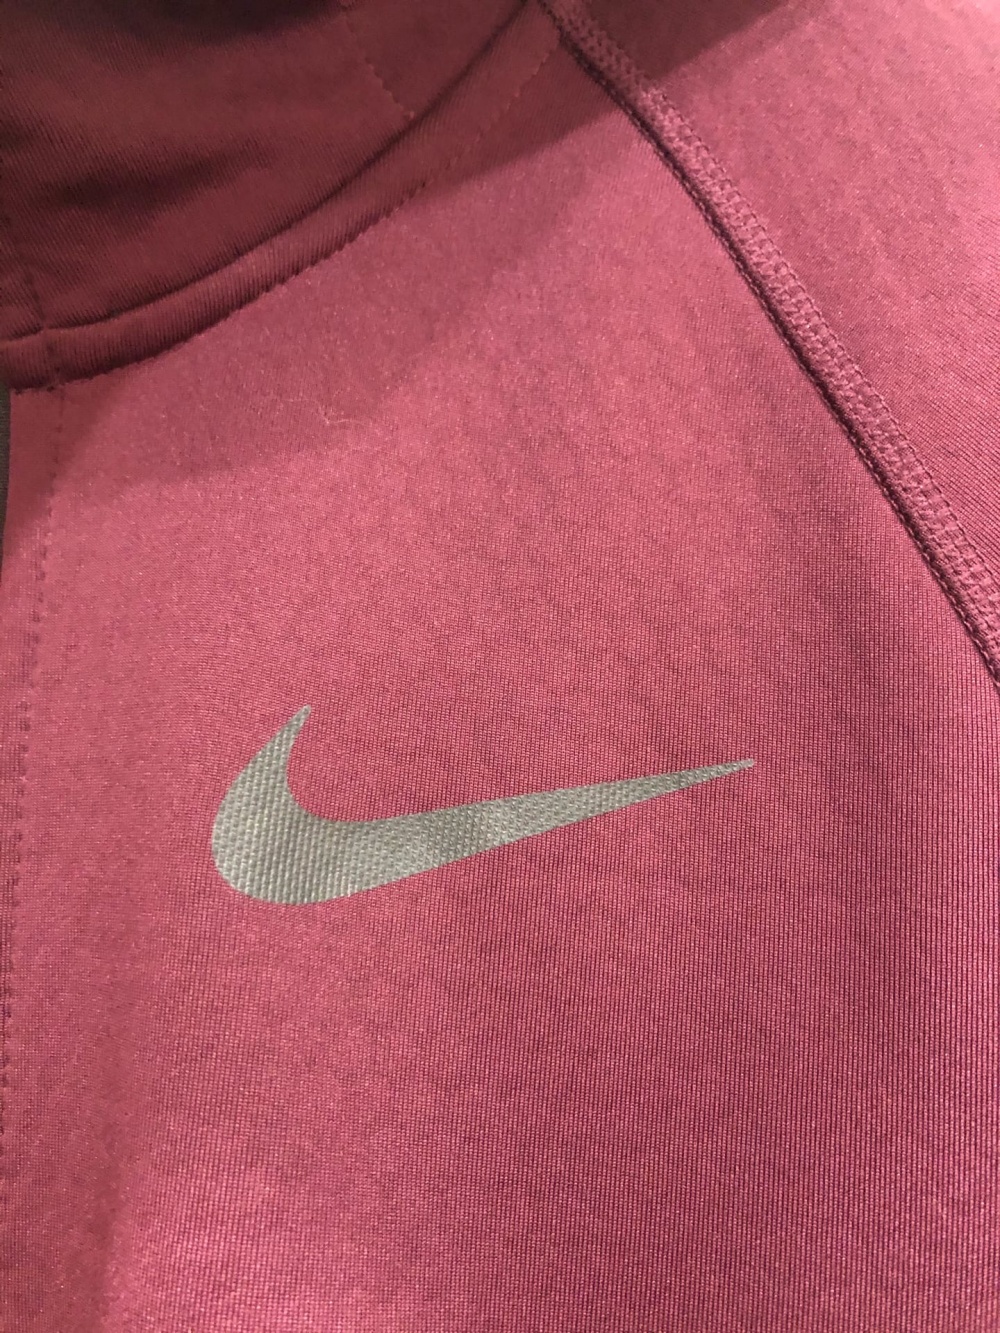 Куртка "Nike Dri-FIT"Размер M-L.